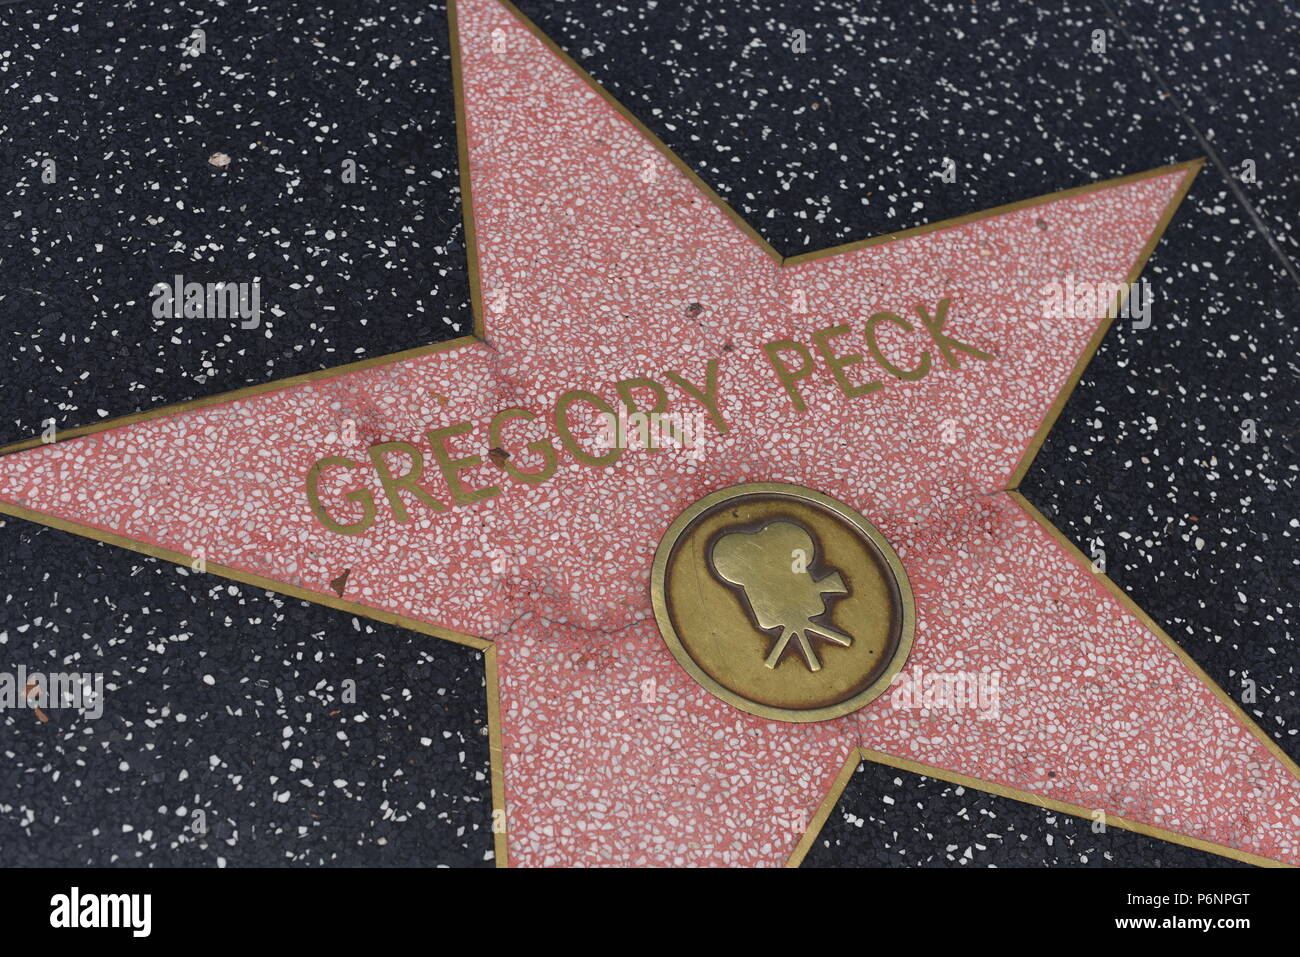 HOLLYWOOD, CA - 29 Giugno: Gregory Peck stella sulla Hollywood Walk of Fame in Hollywood, la California il 29 giugno 2018. Foto Stock